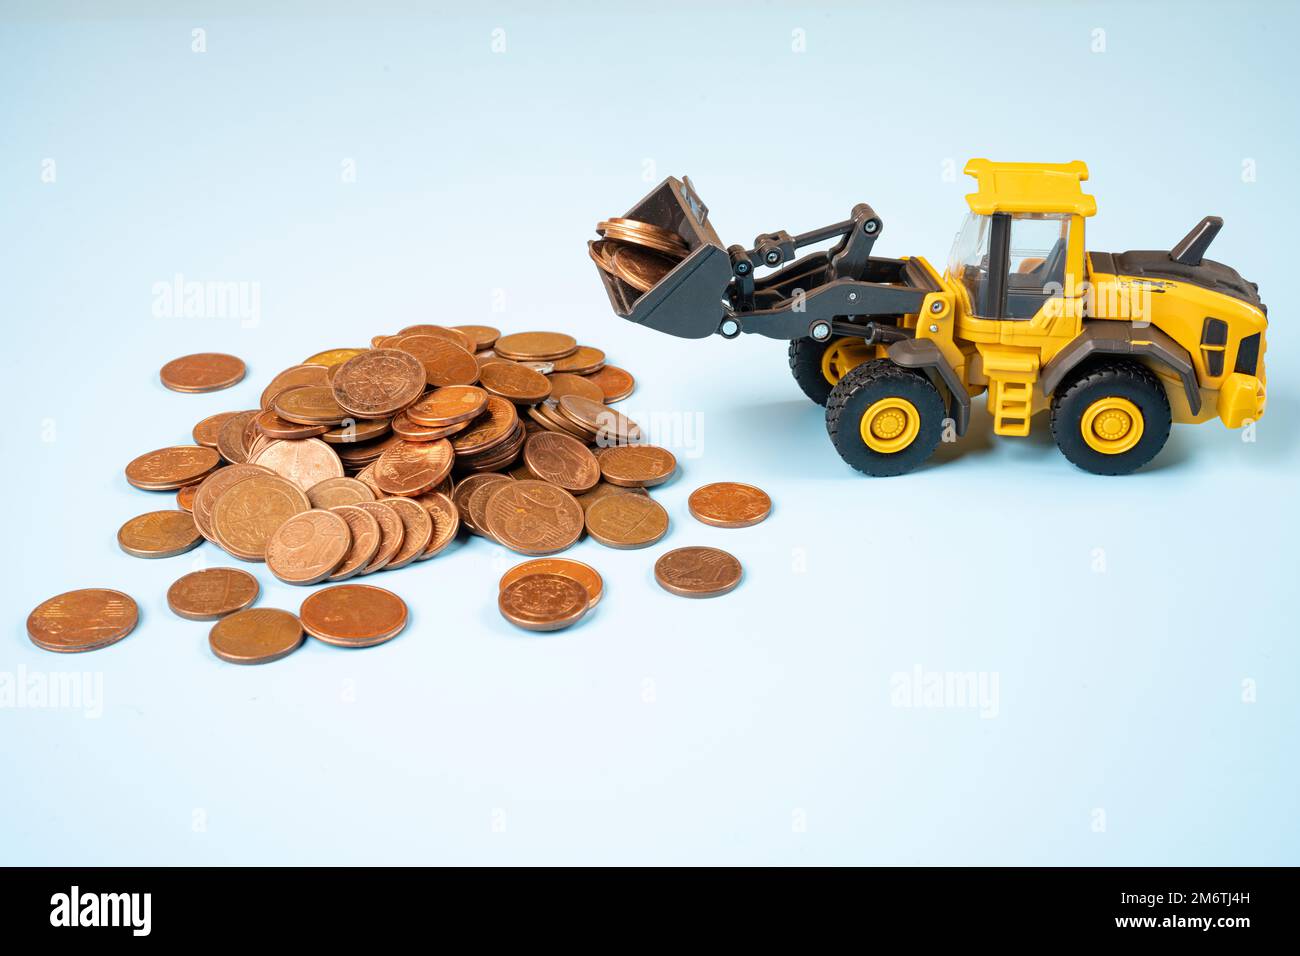 un modèle miniature d'un bulldozer déplaçant un tas de pièces de cents d'euros Banque D'Images